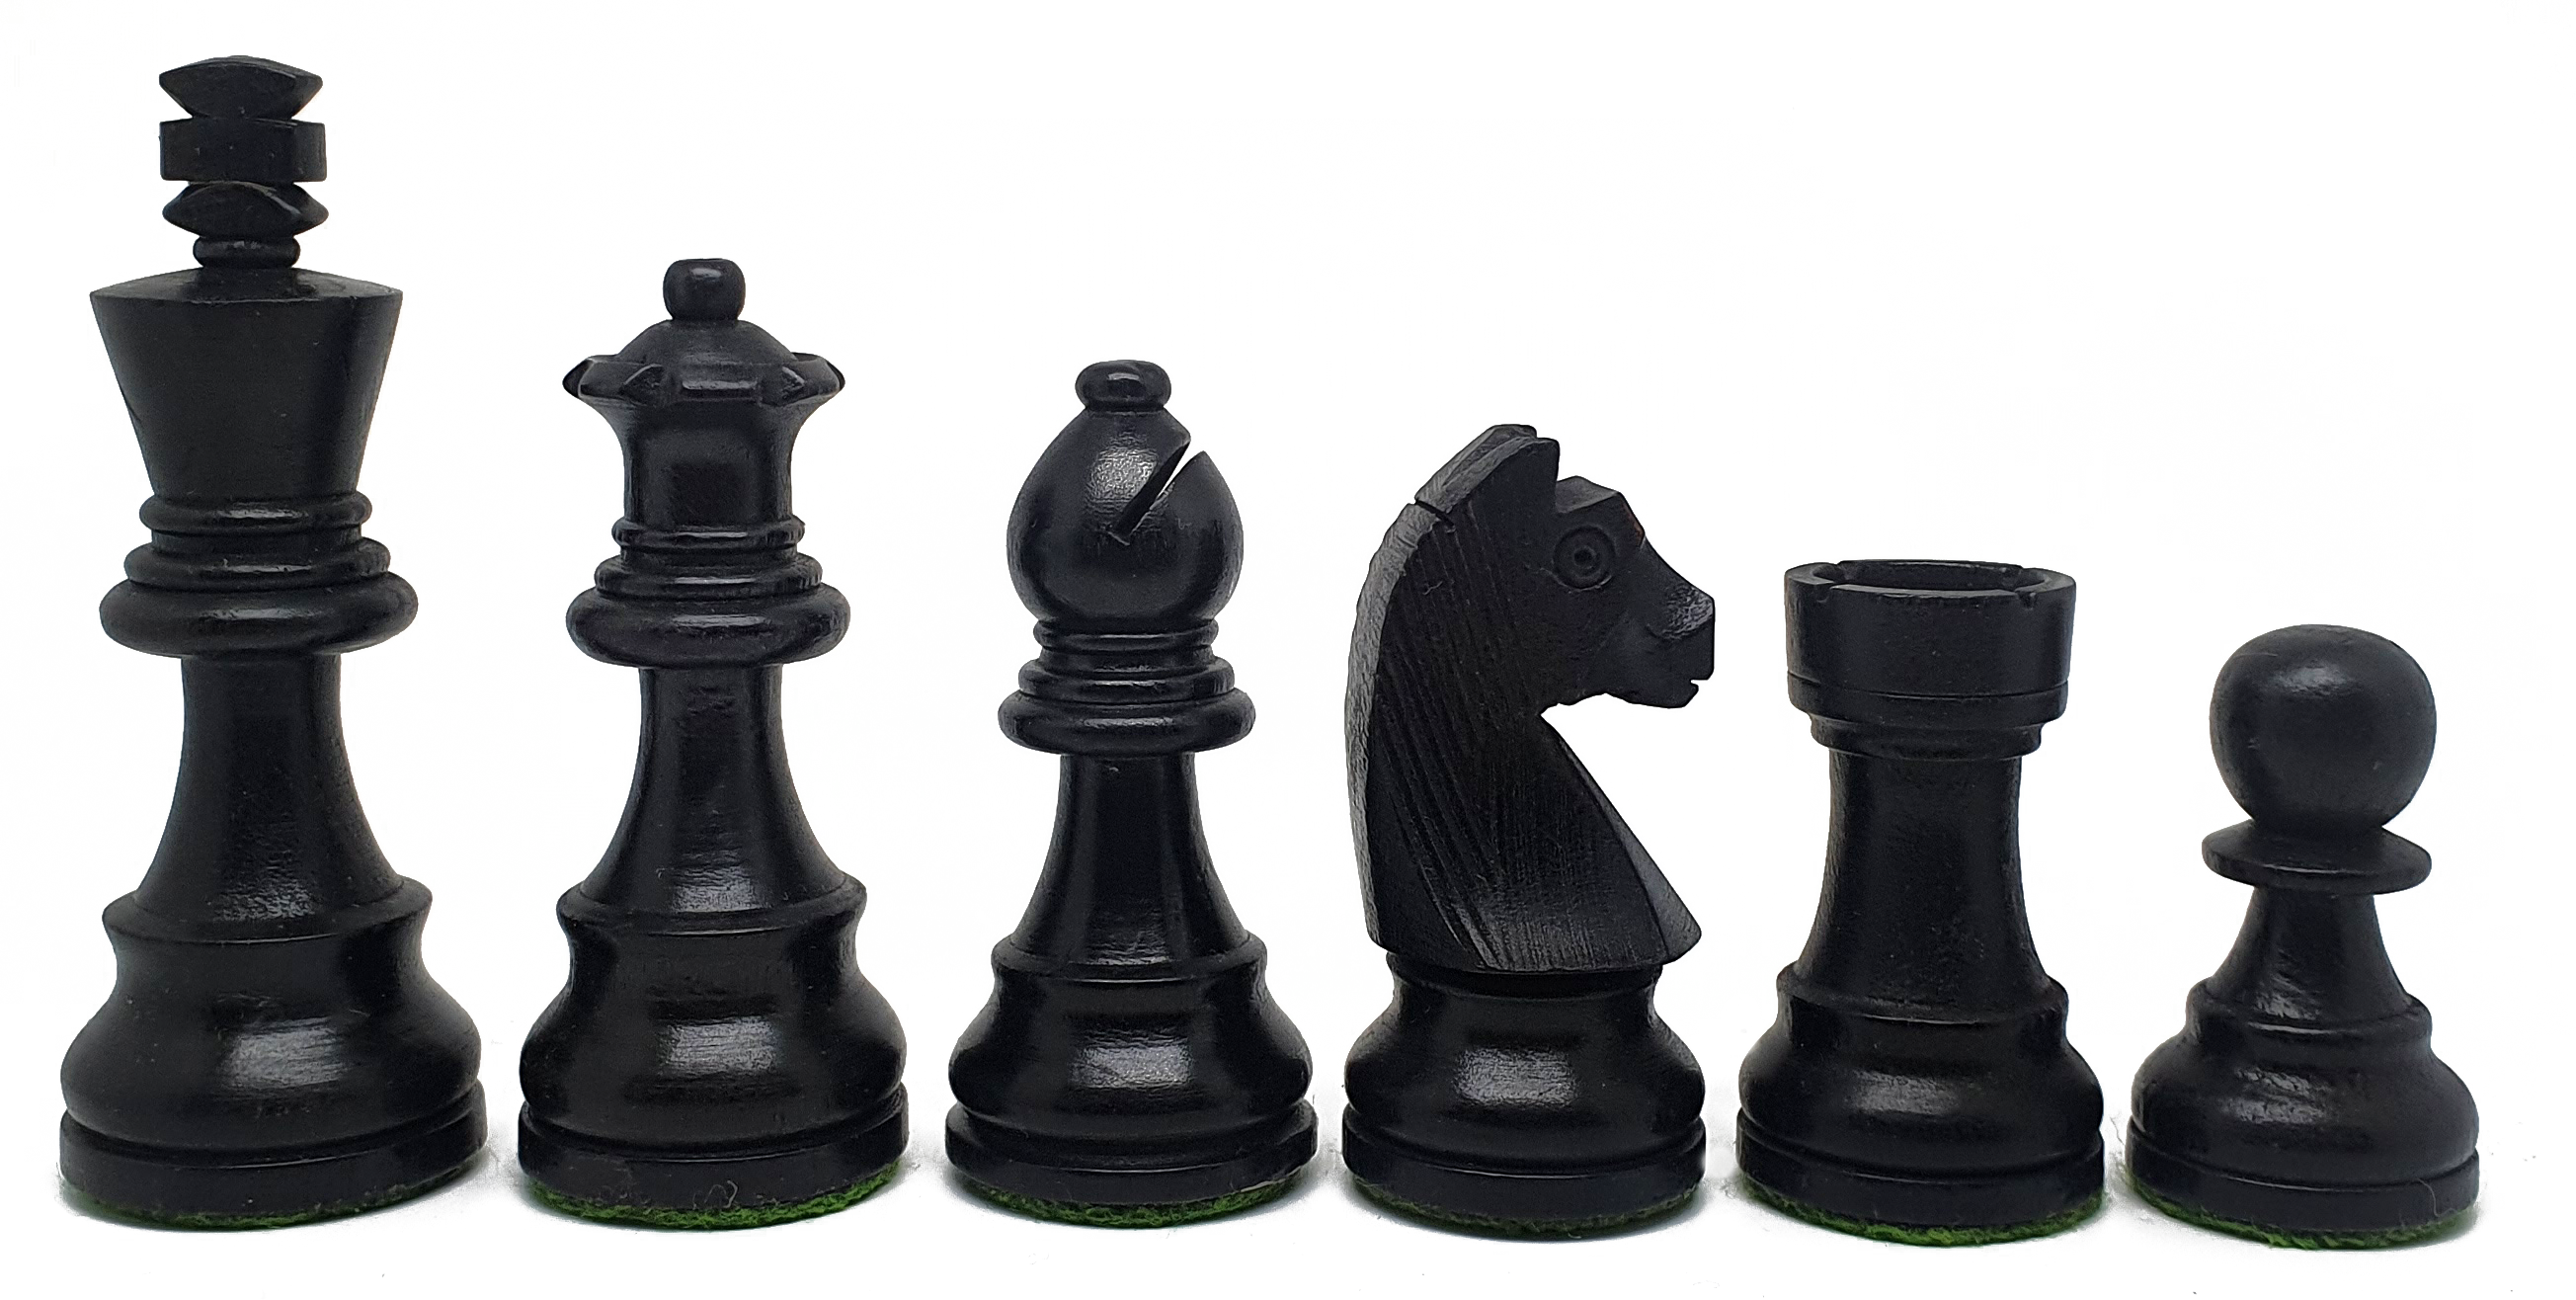 VI/ Piezas de ajedrez modelo Alemán "3,50" Ebanizado.